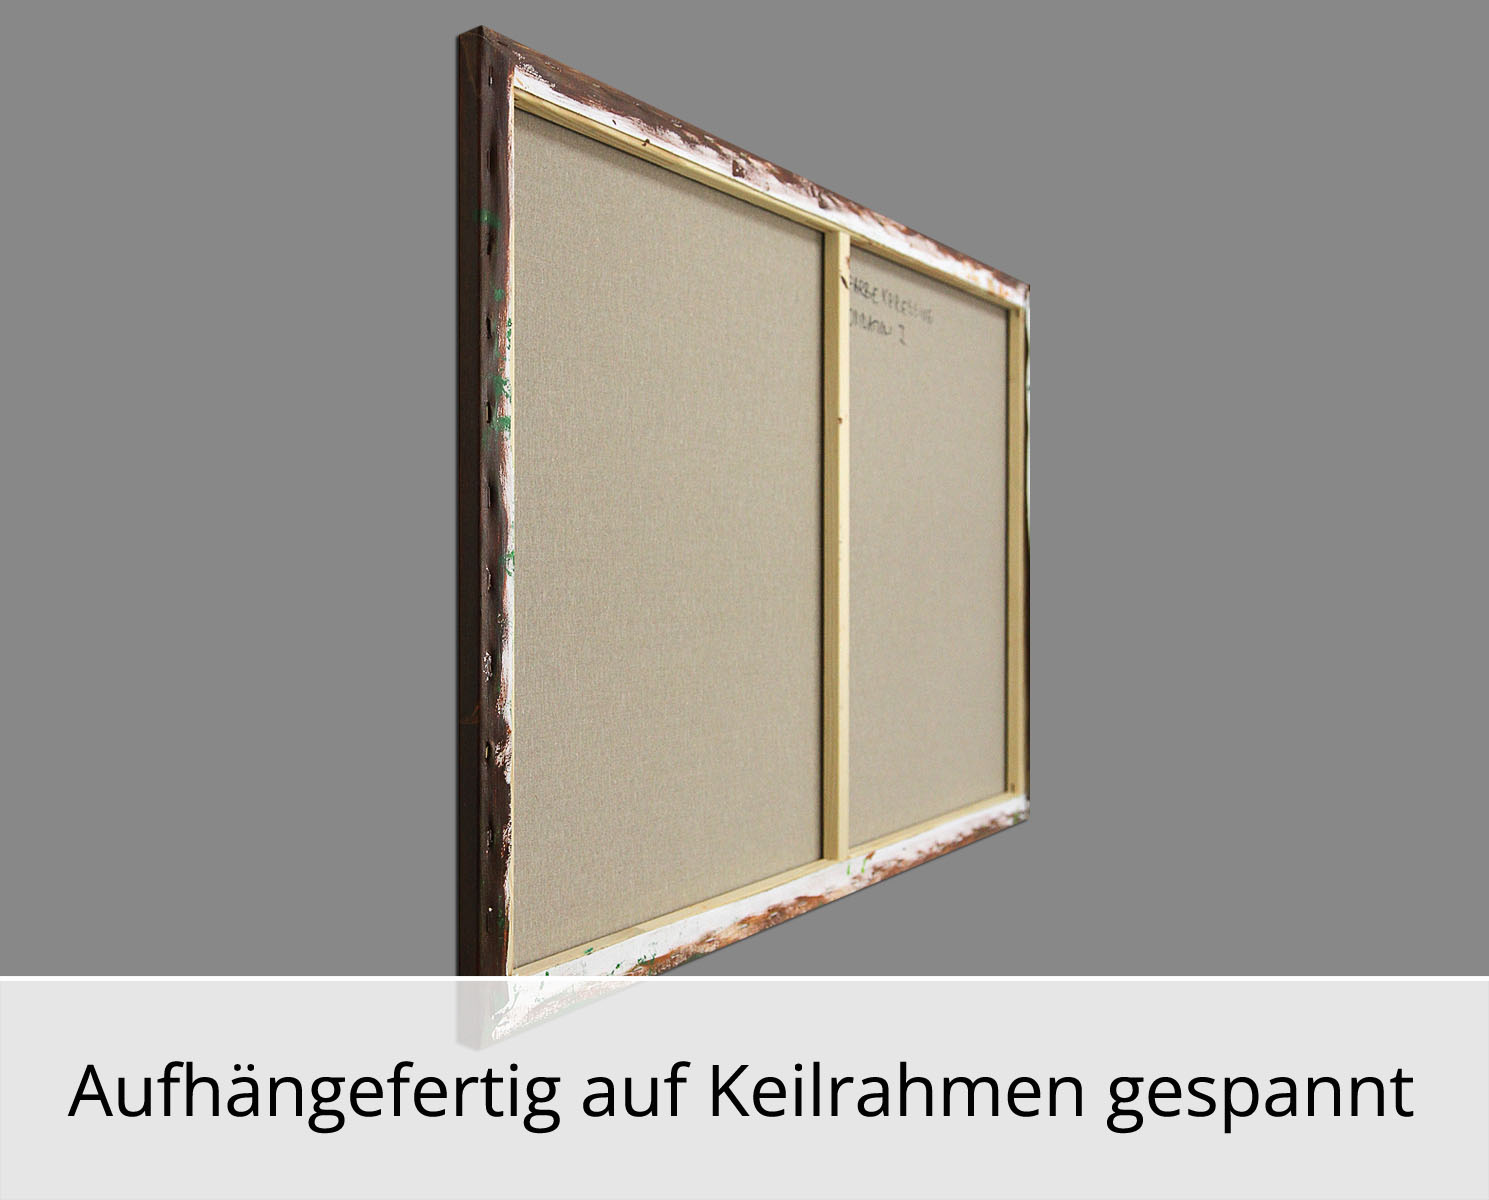 R. König: "Farbexpressive Oxidation I", abstraktes Originalgemälde (Unikat)